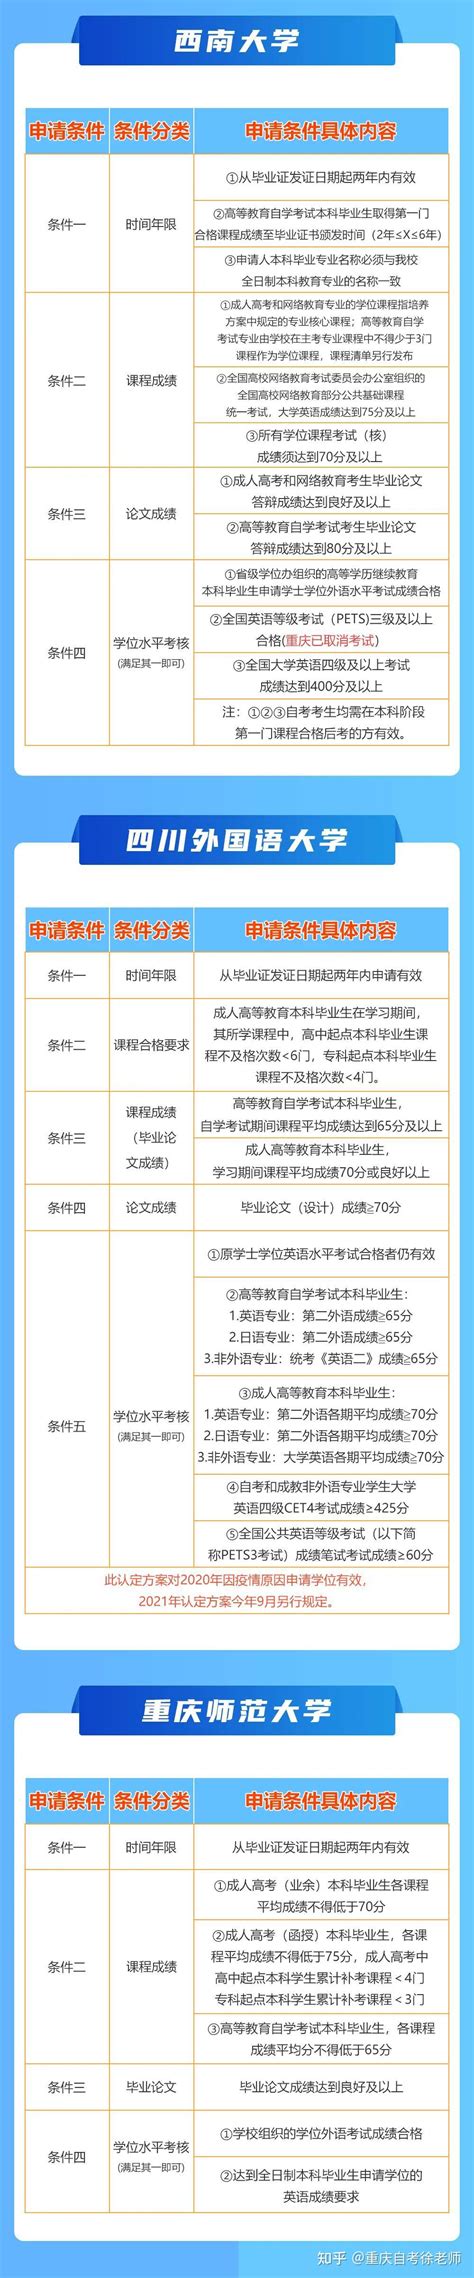 重庆理工大学2018年下半年学士学位证书申请办理通知_重庆自考网